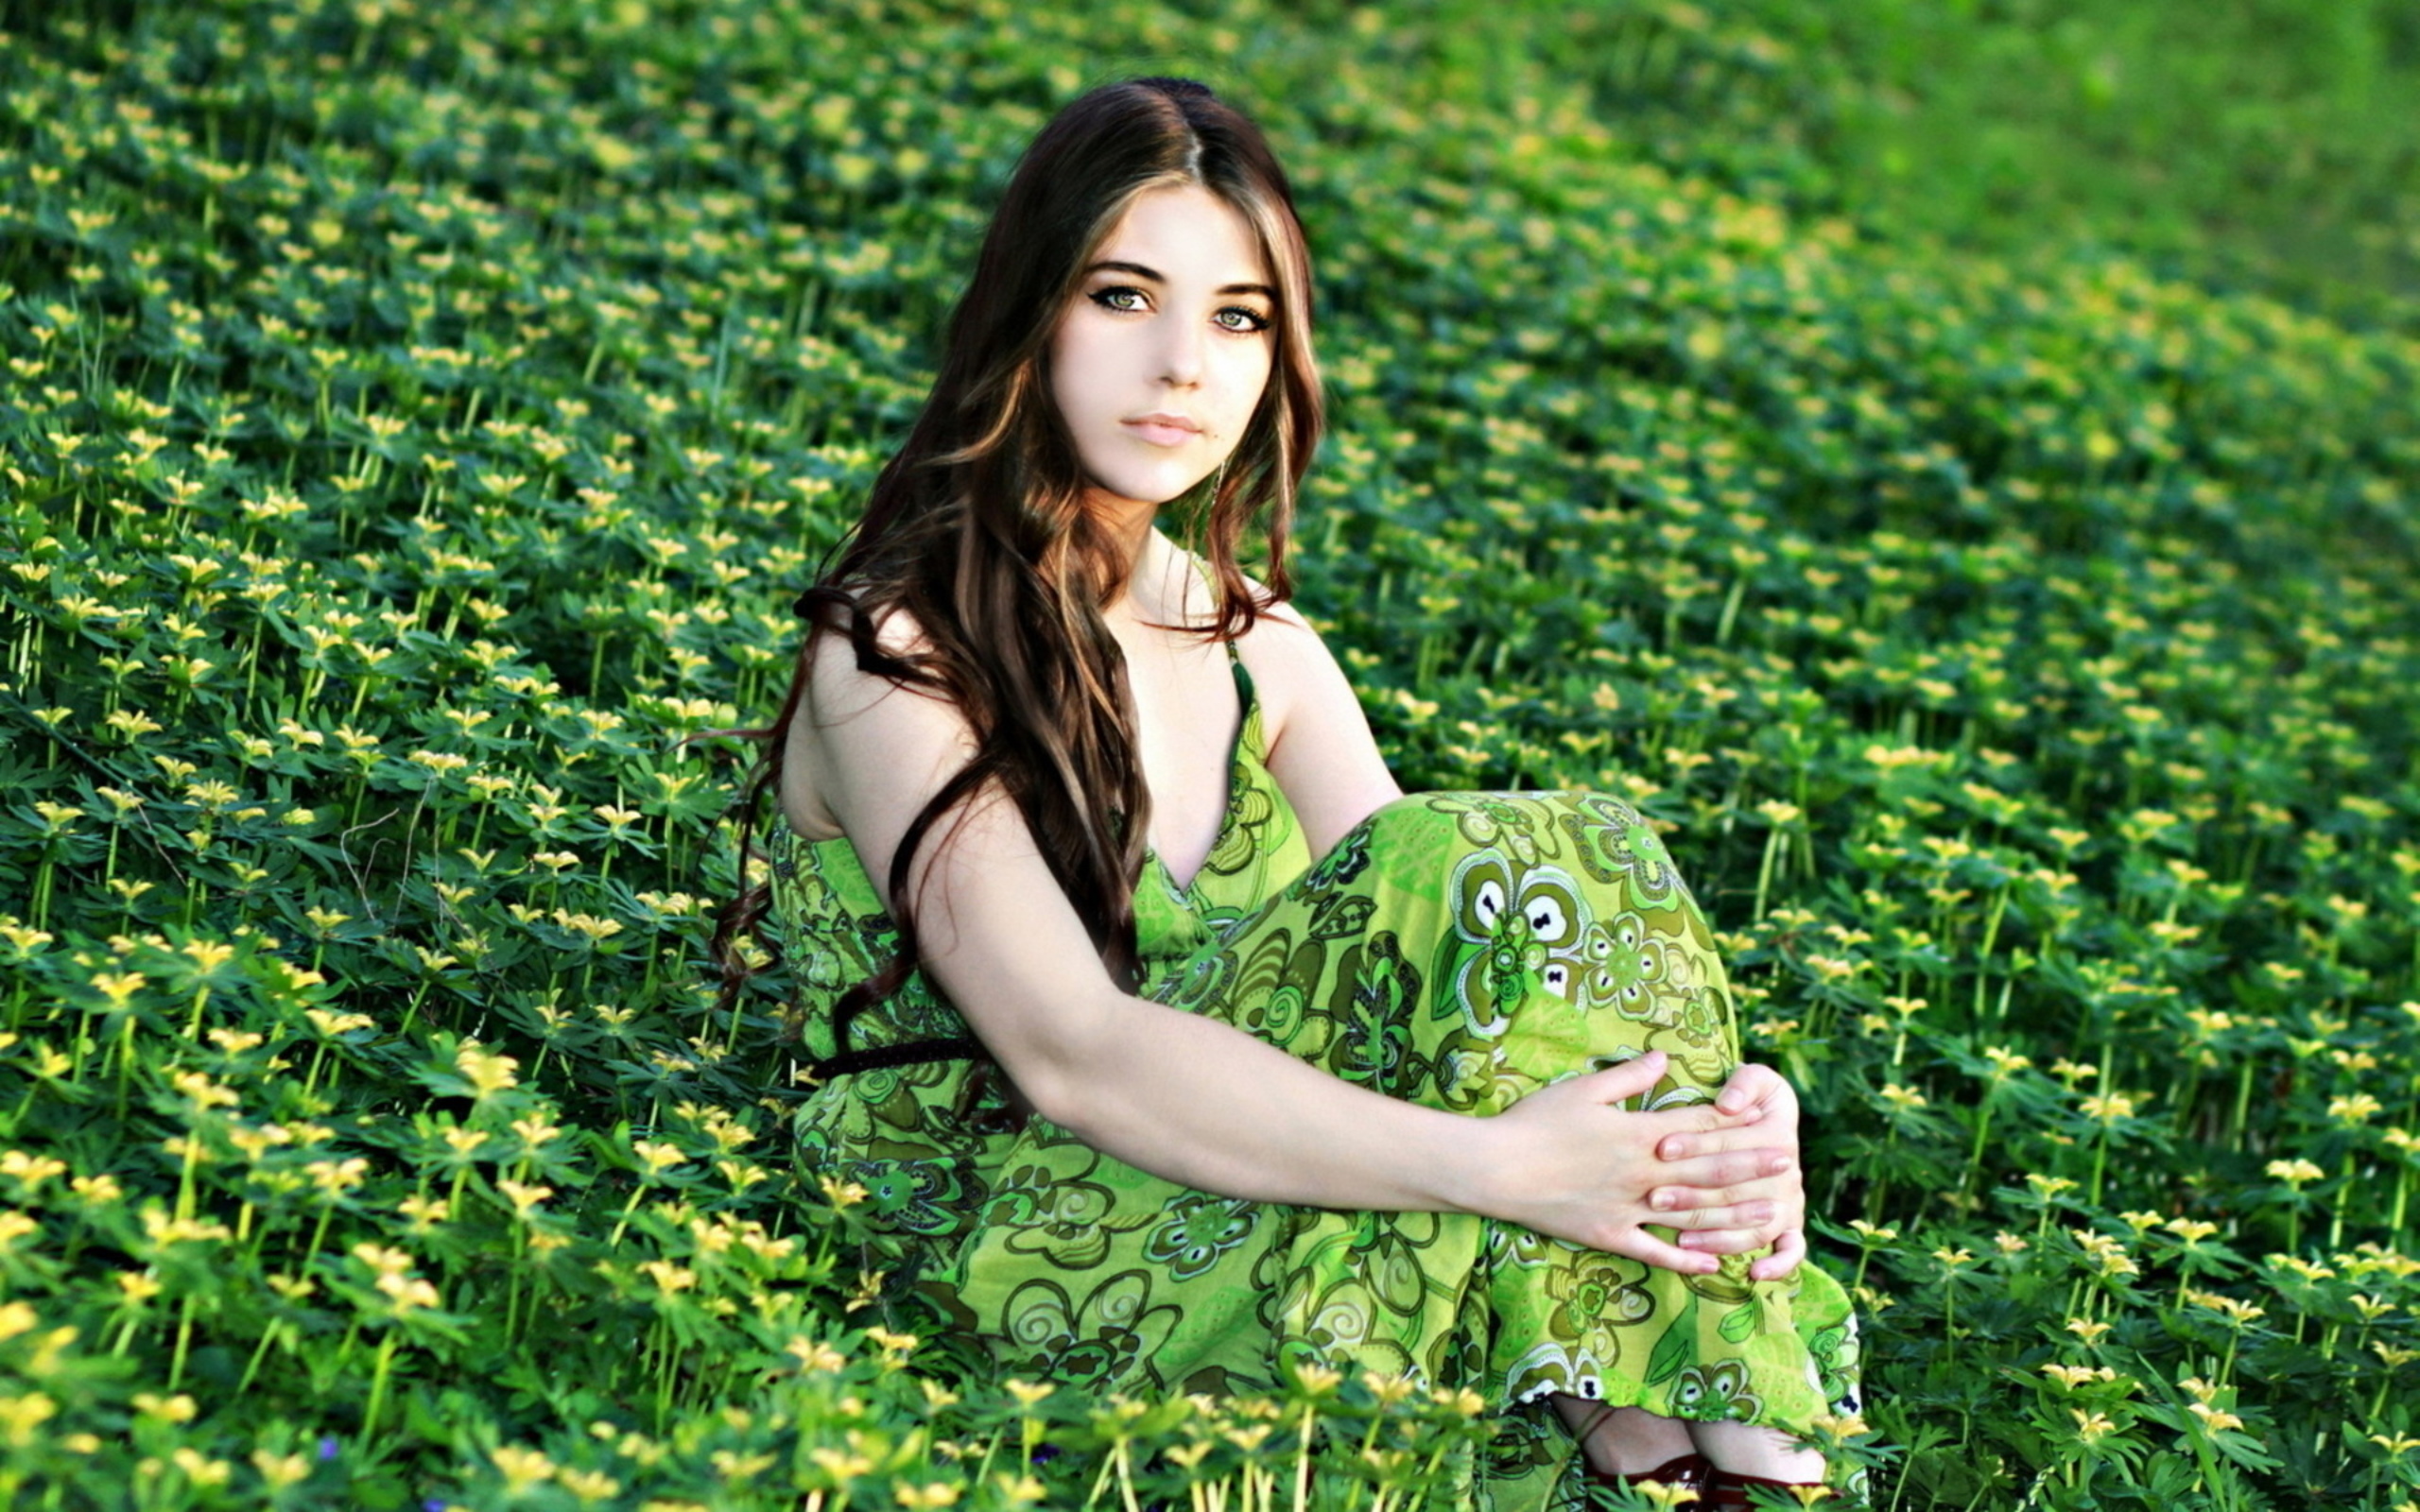 Полных женщин на природе. Саммер Филдс актриса. Фотосессия девушки на природе. Девушка в зеленом платье. Фотосессия в зелени.